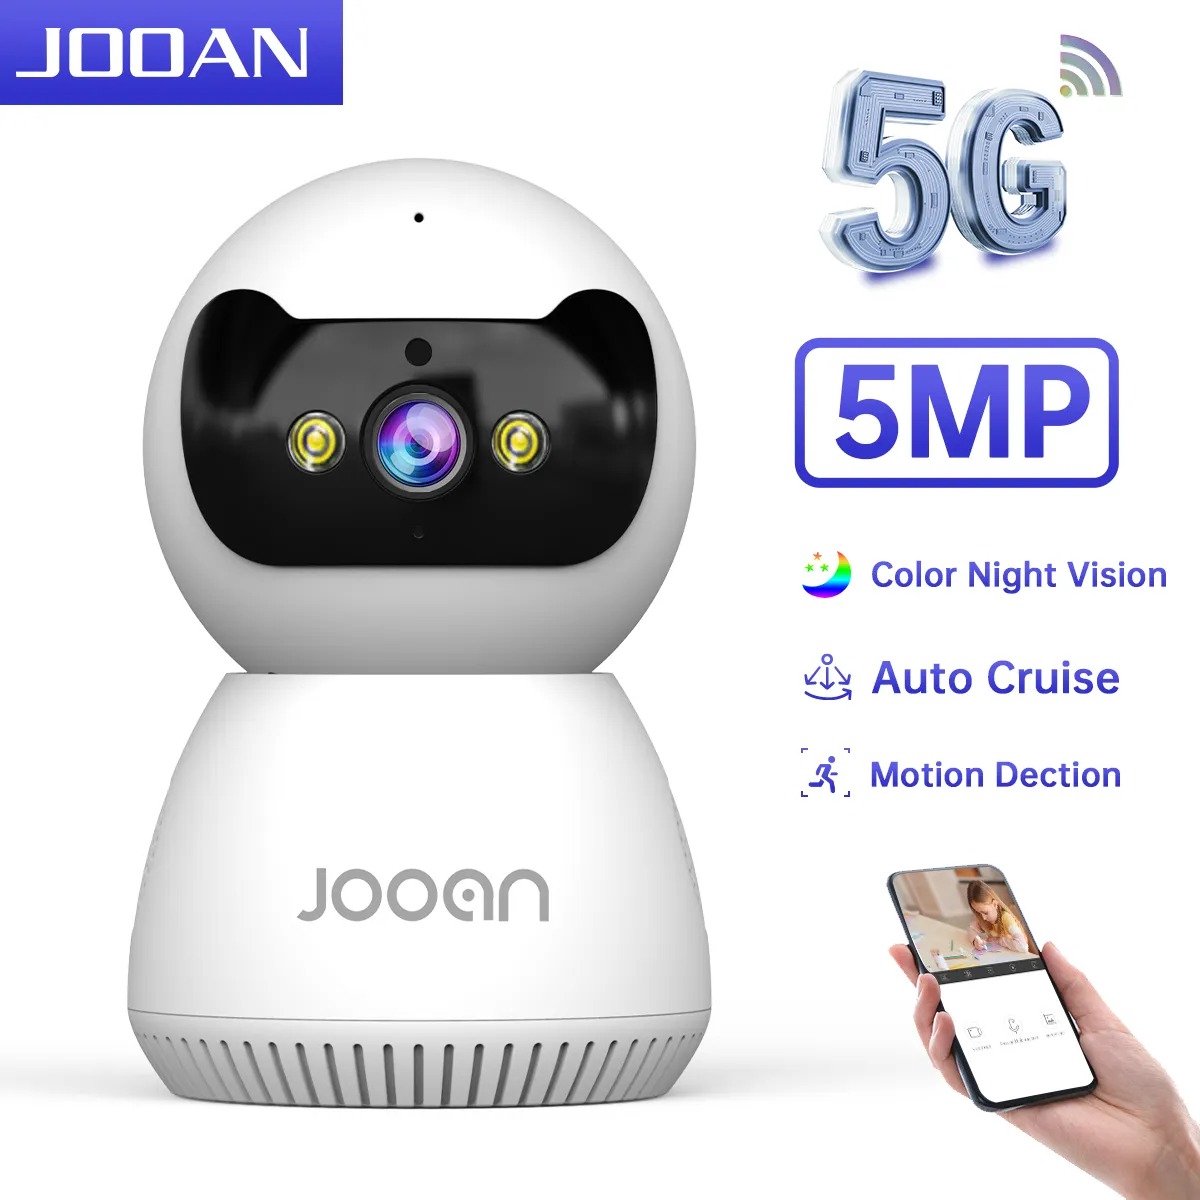 ShopbijStef - Jooan 5MP/3MP IP Camera met 5G WiFi - Beveilig je Huis met Slimme Kleuren Nachtzicht en Intelligente Bewegingsdetectie - AI Tracking - Videobewaking en Smart Babyfoon in één - Wit